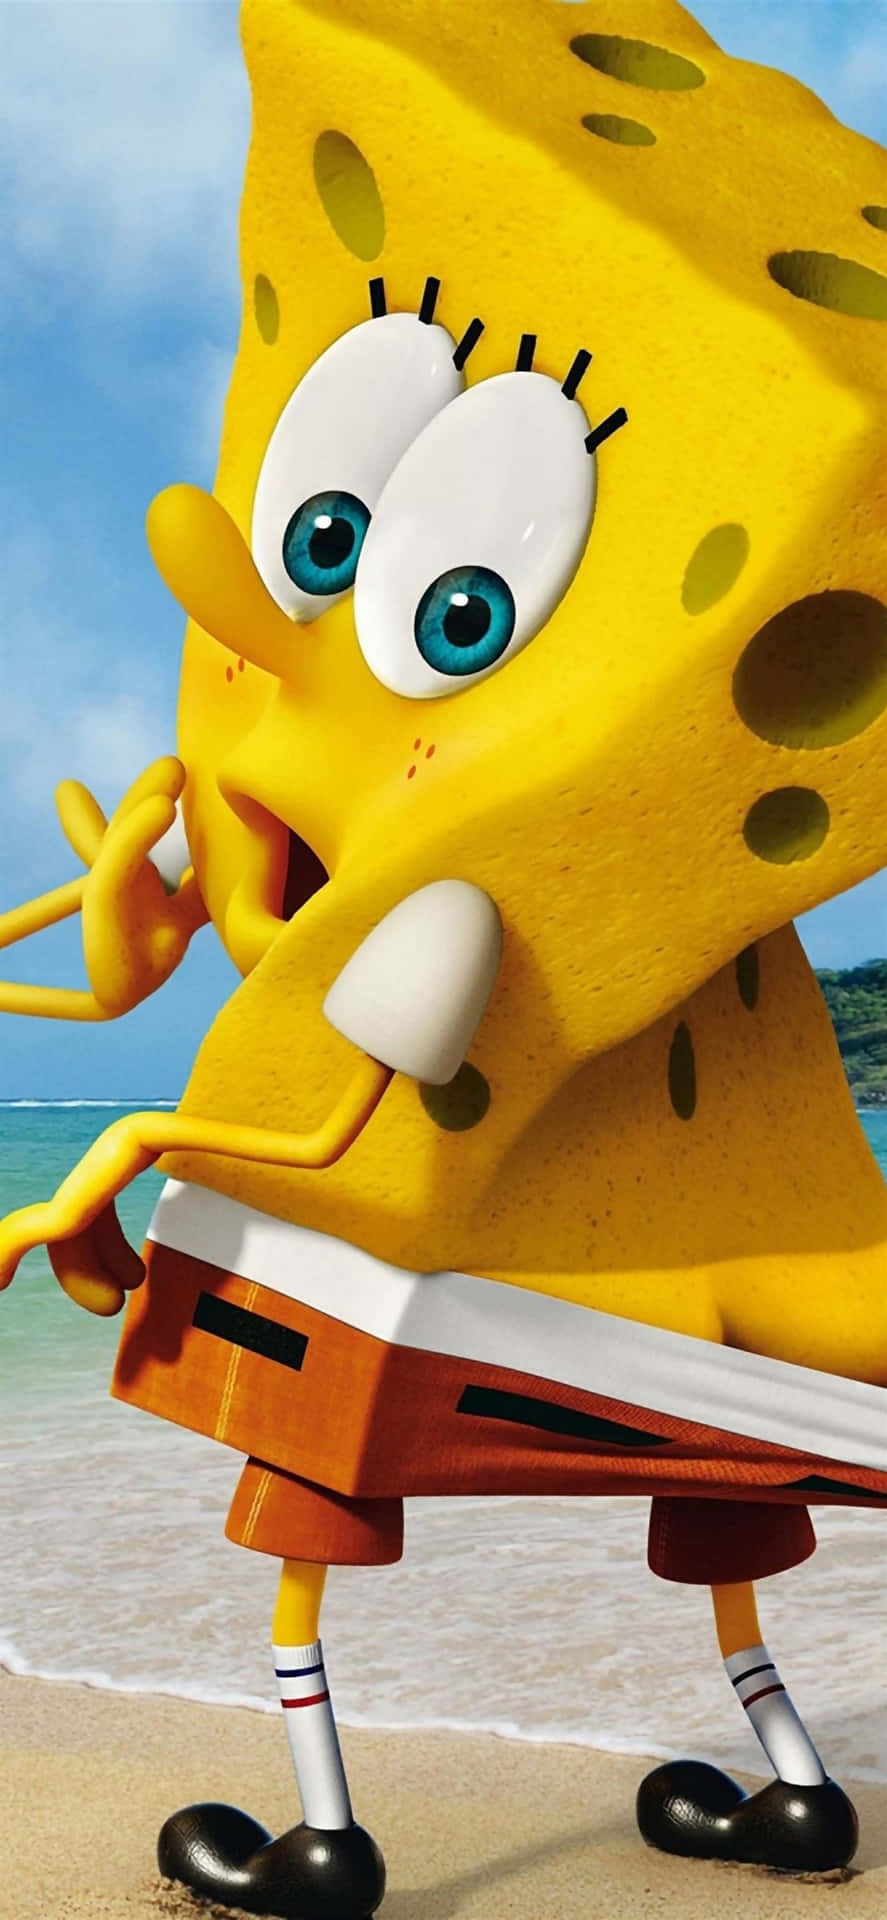 Ugly Spongebob giving you the side eye